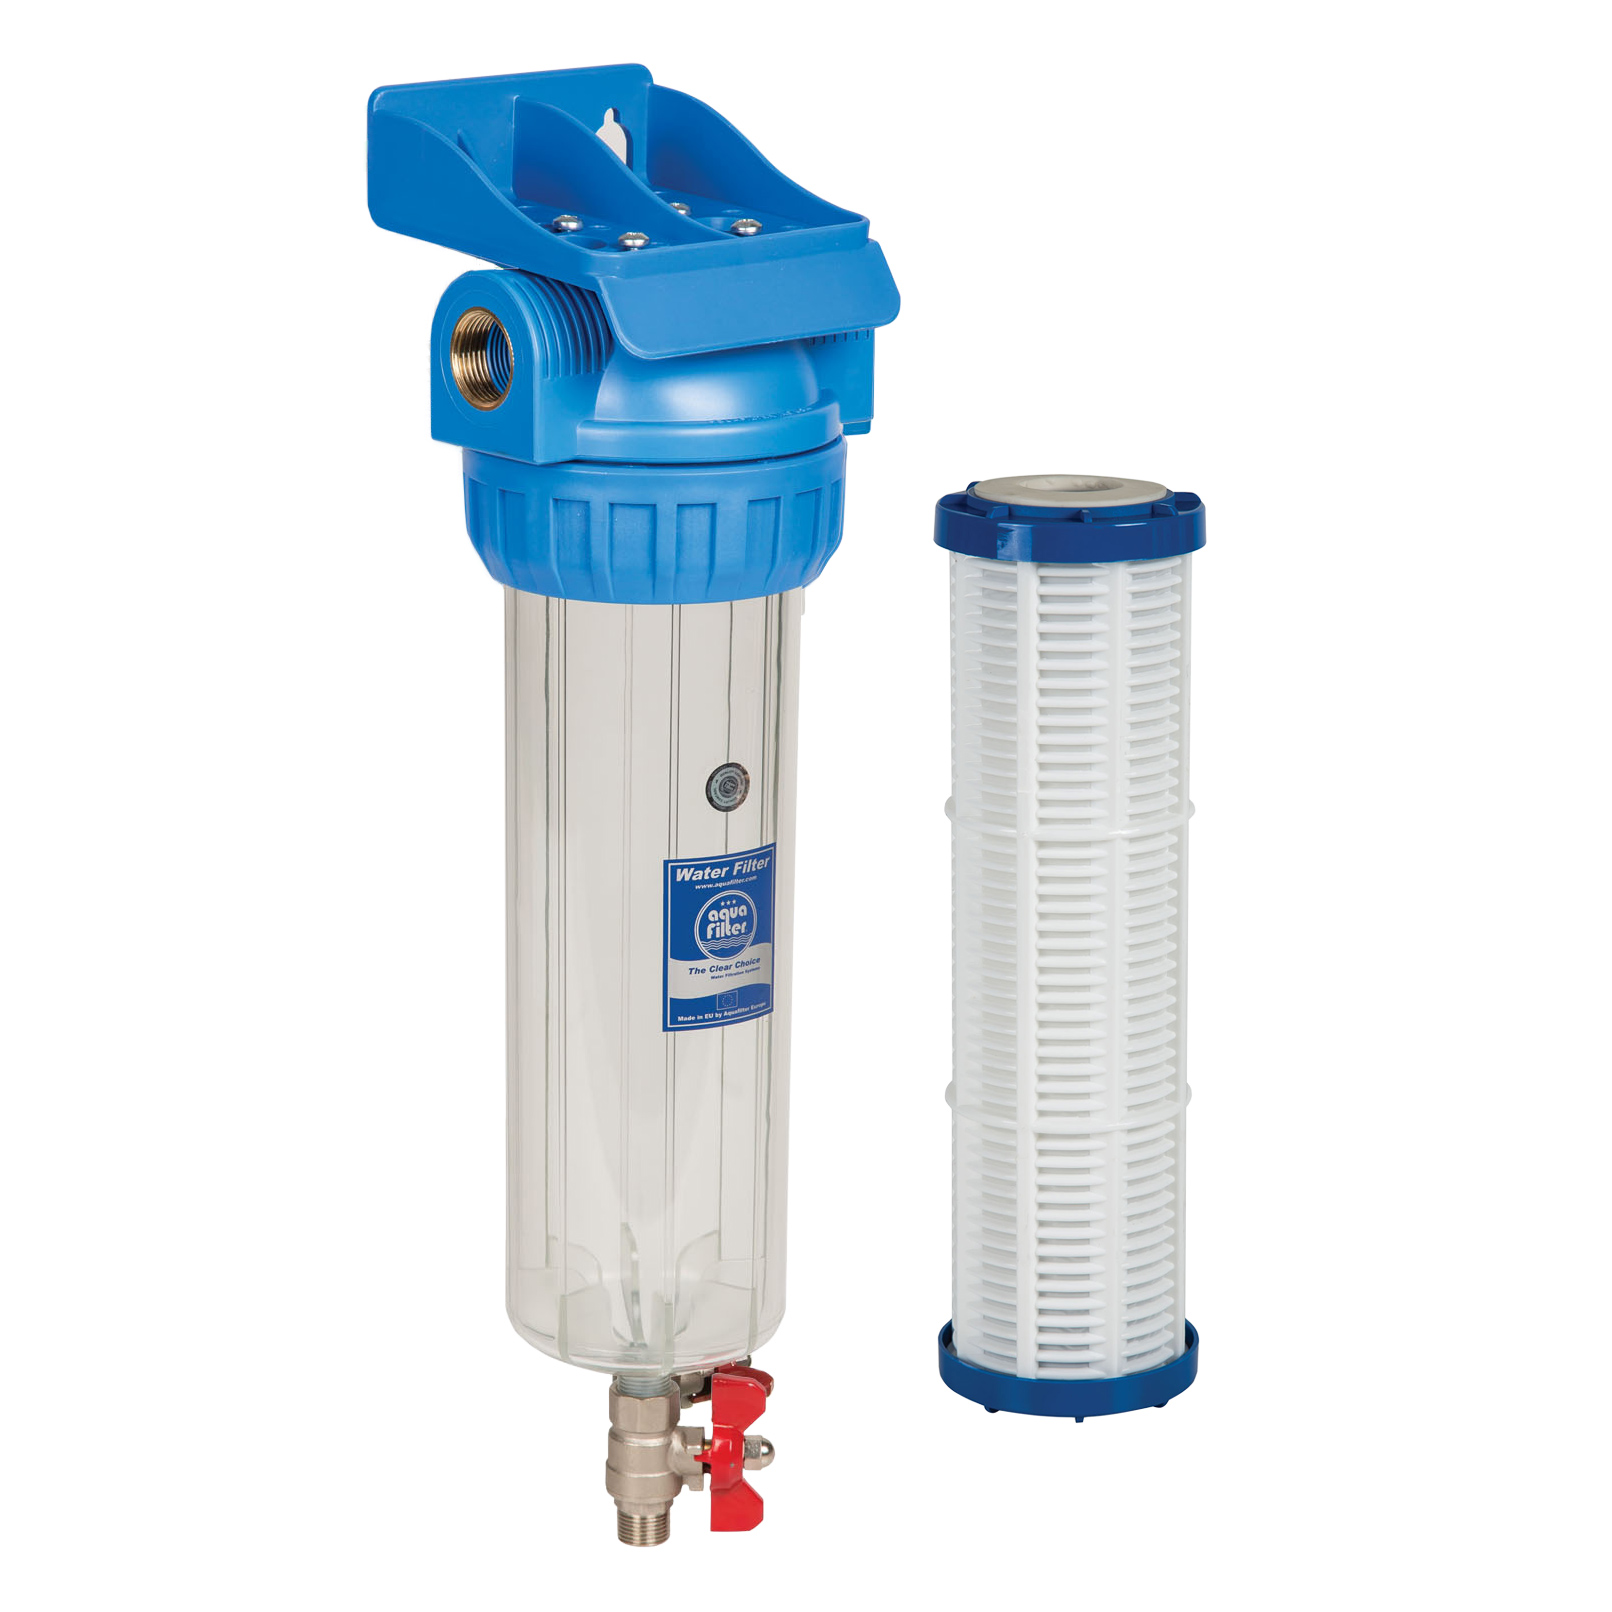 Корпус фильтра воды 10. 281750-20 Корпус водяного фильтра 95 body Water Filter Johnston Sweepers. Bb20 корпус фильтра со сливом. Водяной фильтр 950 WTS. Магистральный фильтр со сливным краном.